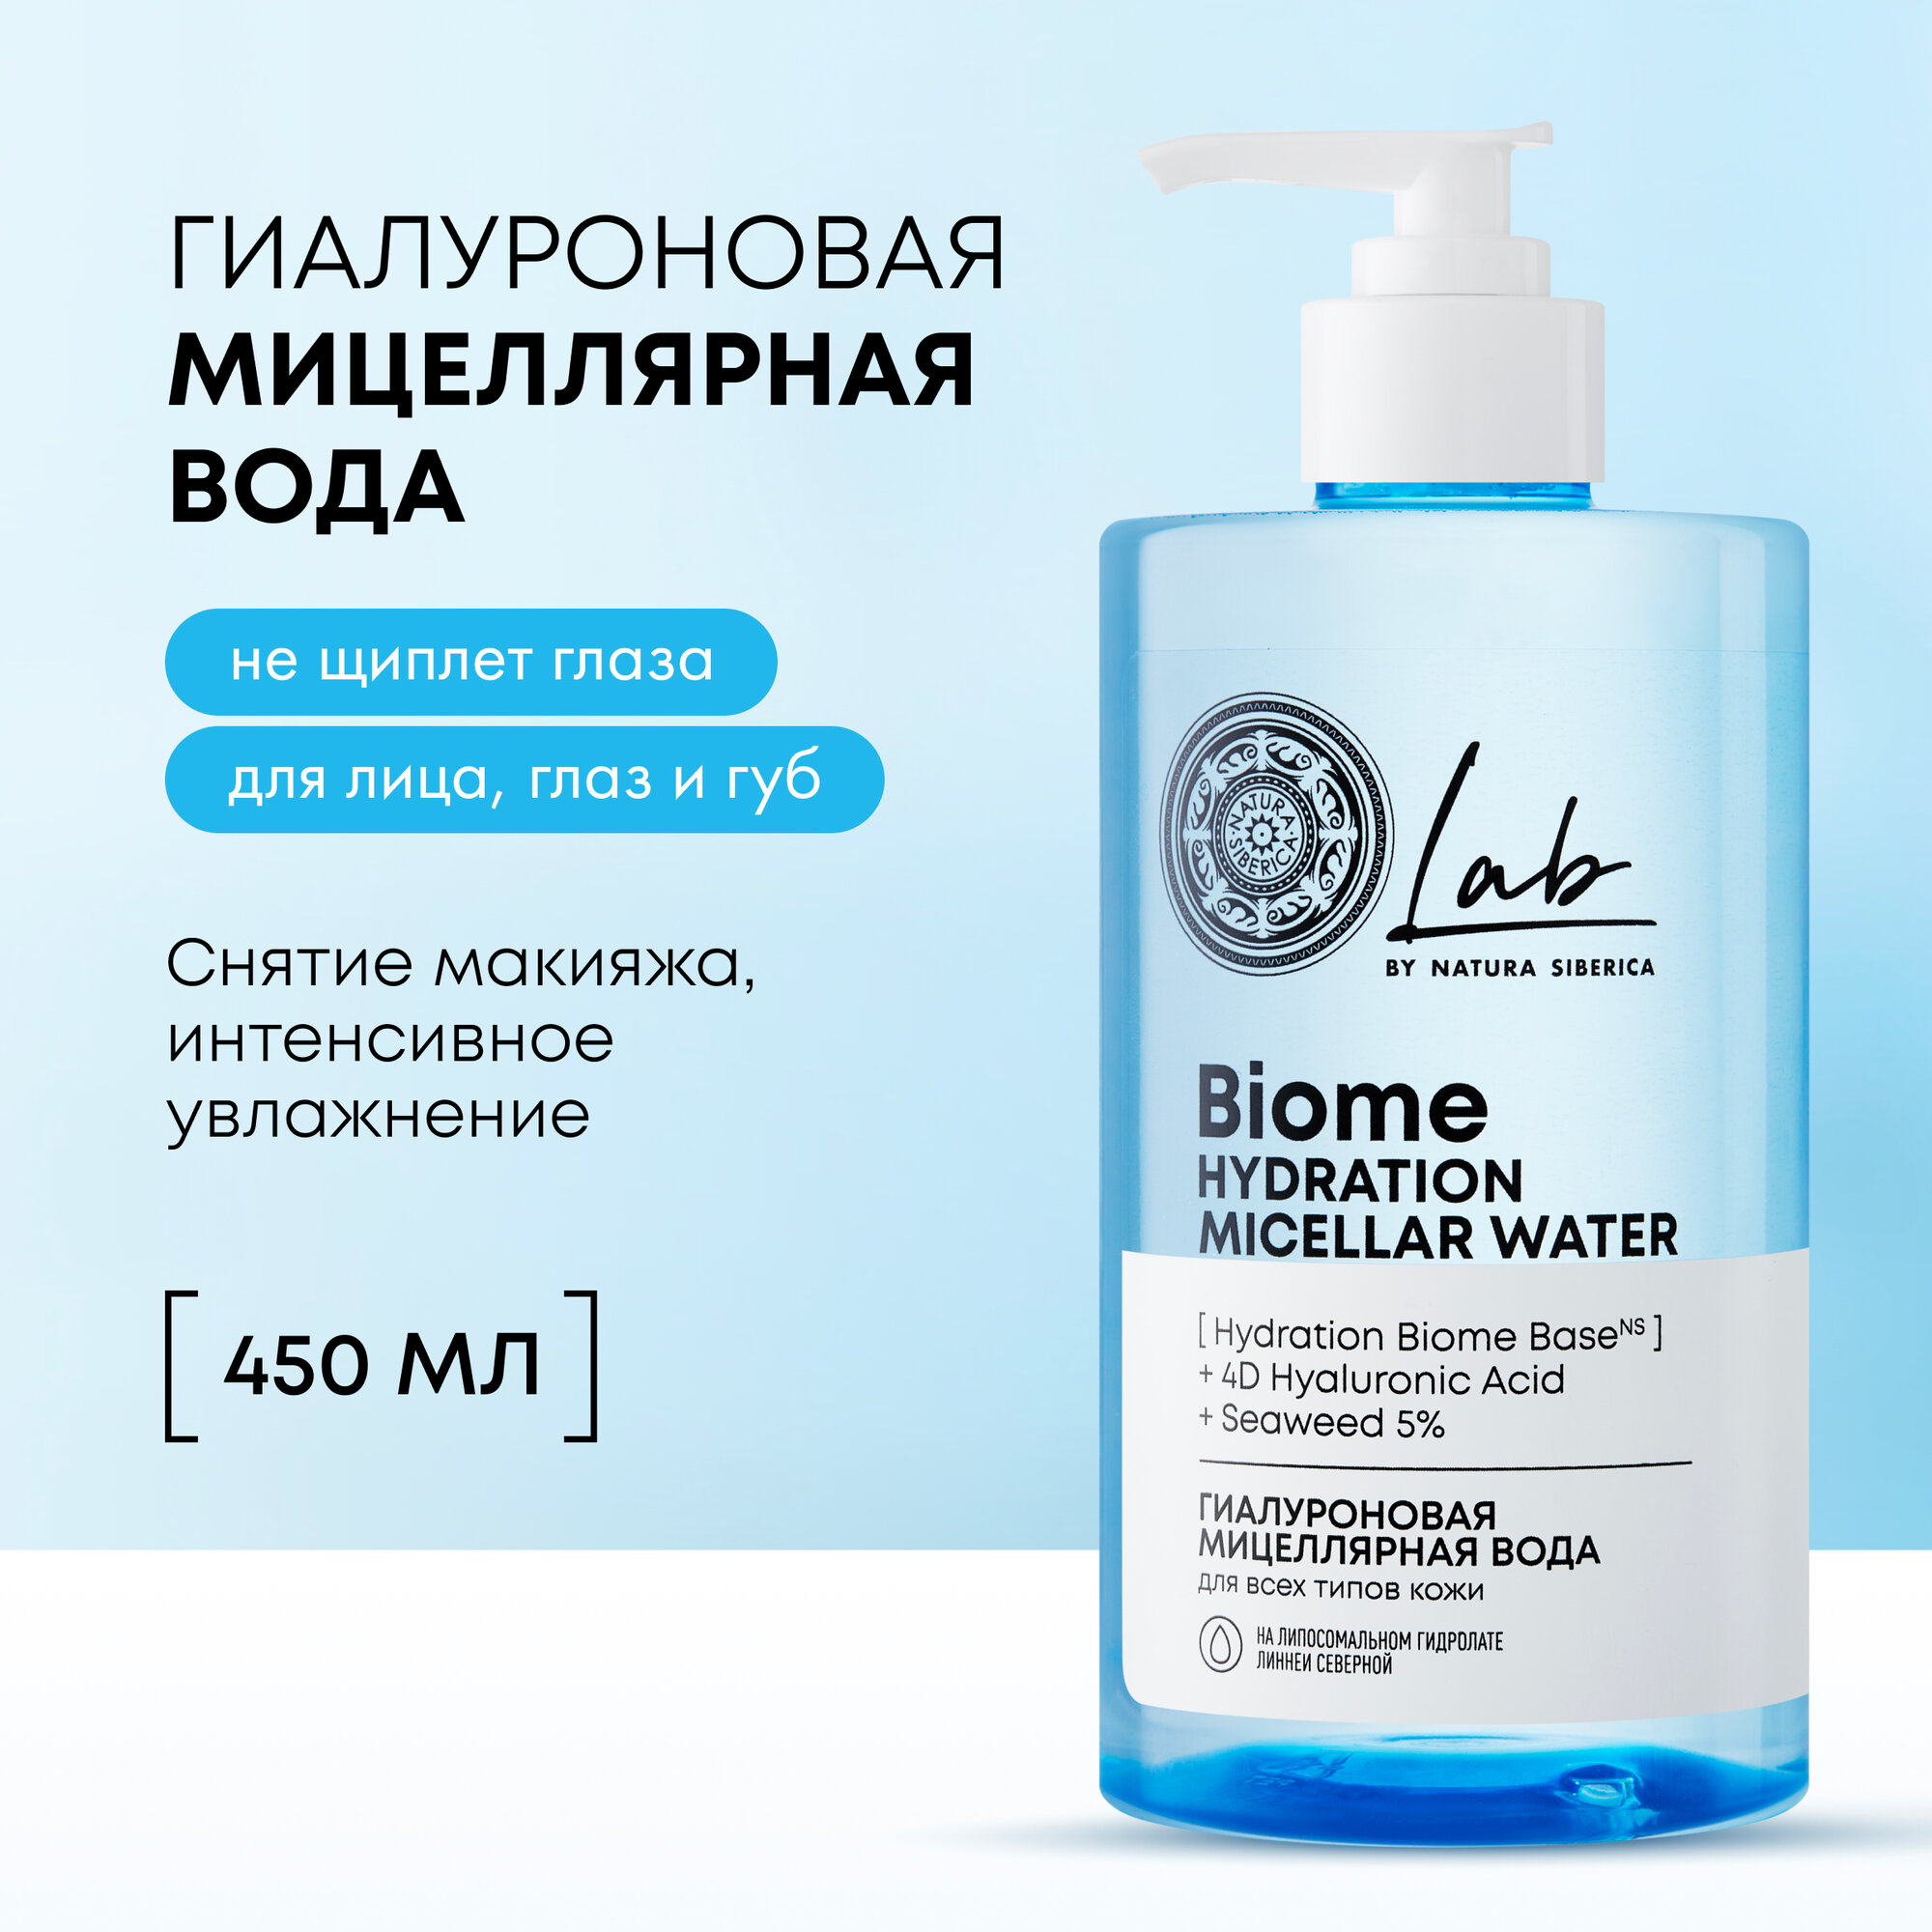 Гиалуроновая мицеллярная вода для всех типов кожи Natura Siberica LAB Biome Hydration, 450 мл